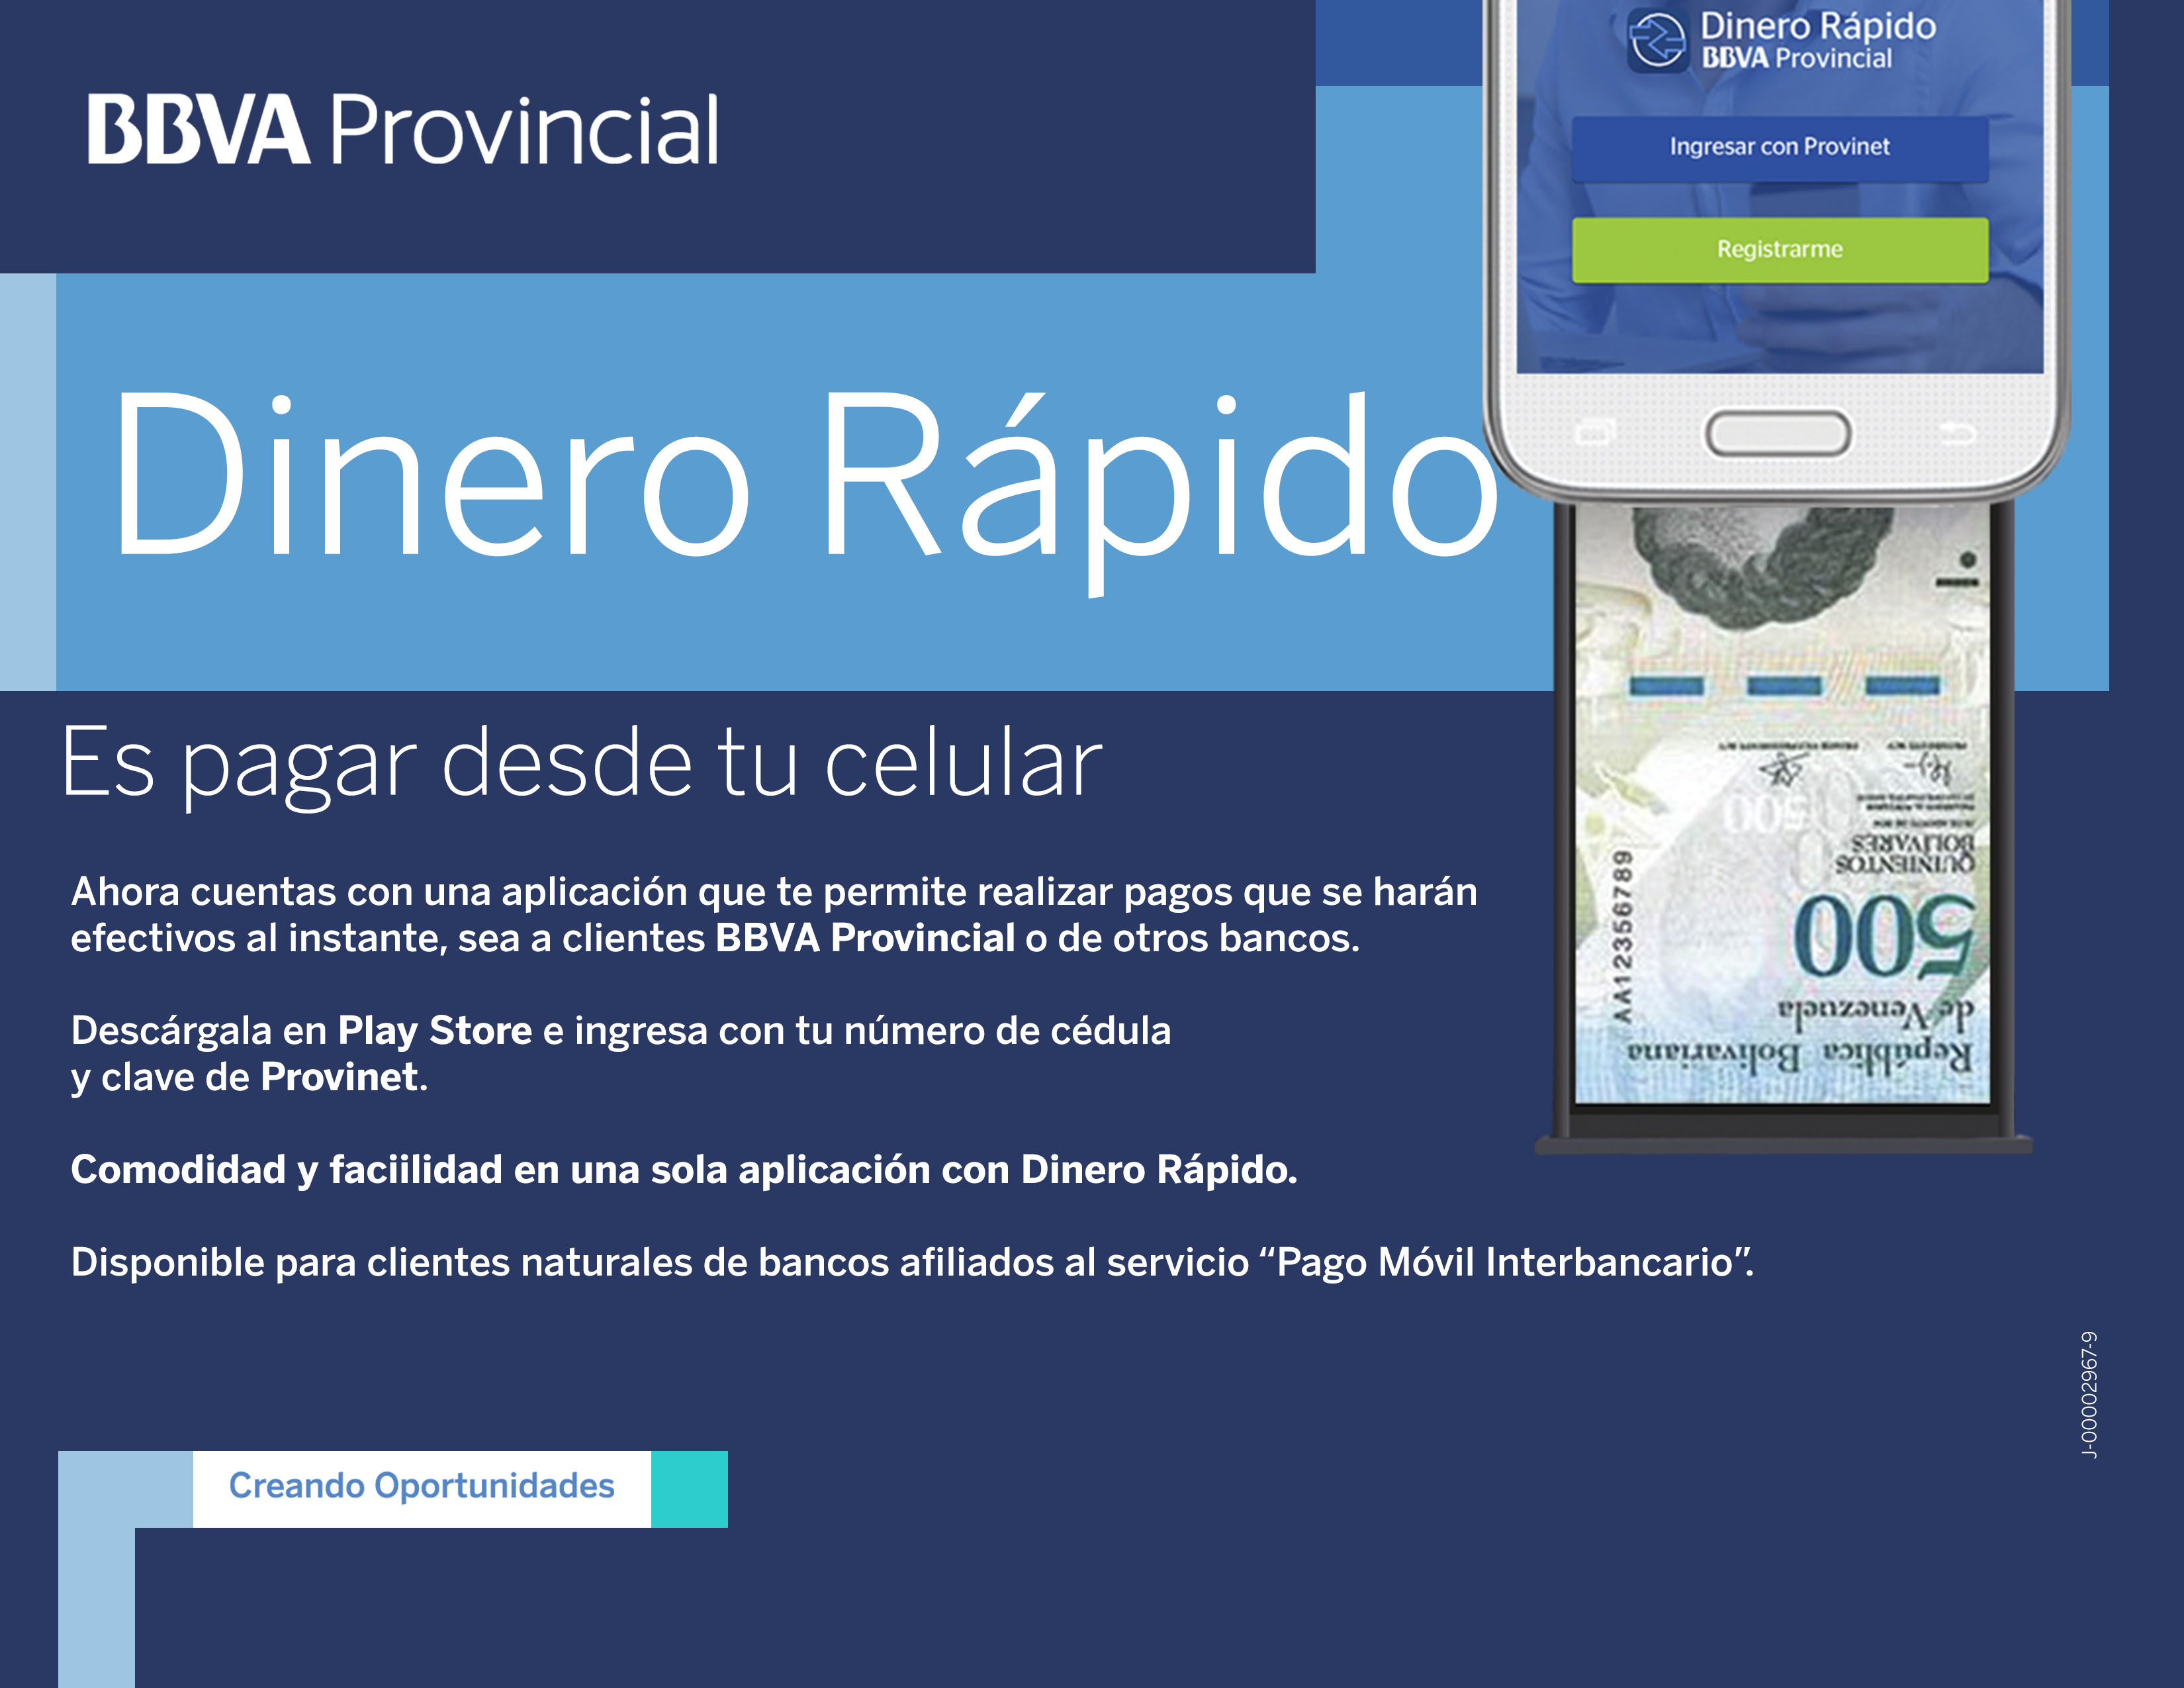 BBVA Provincial lanza su aplicación para pagos por celular